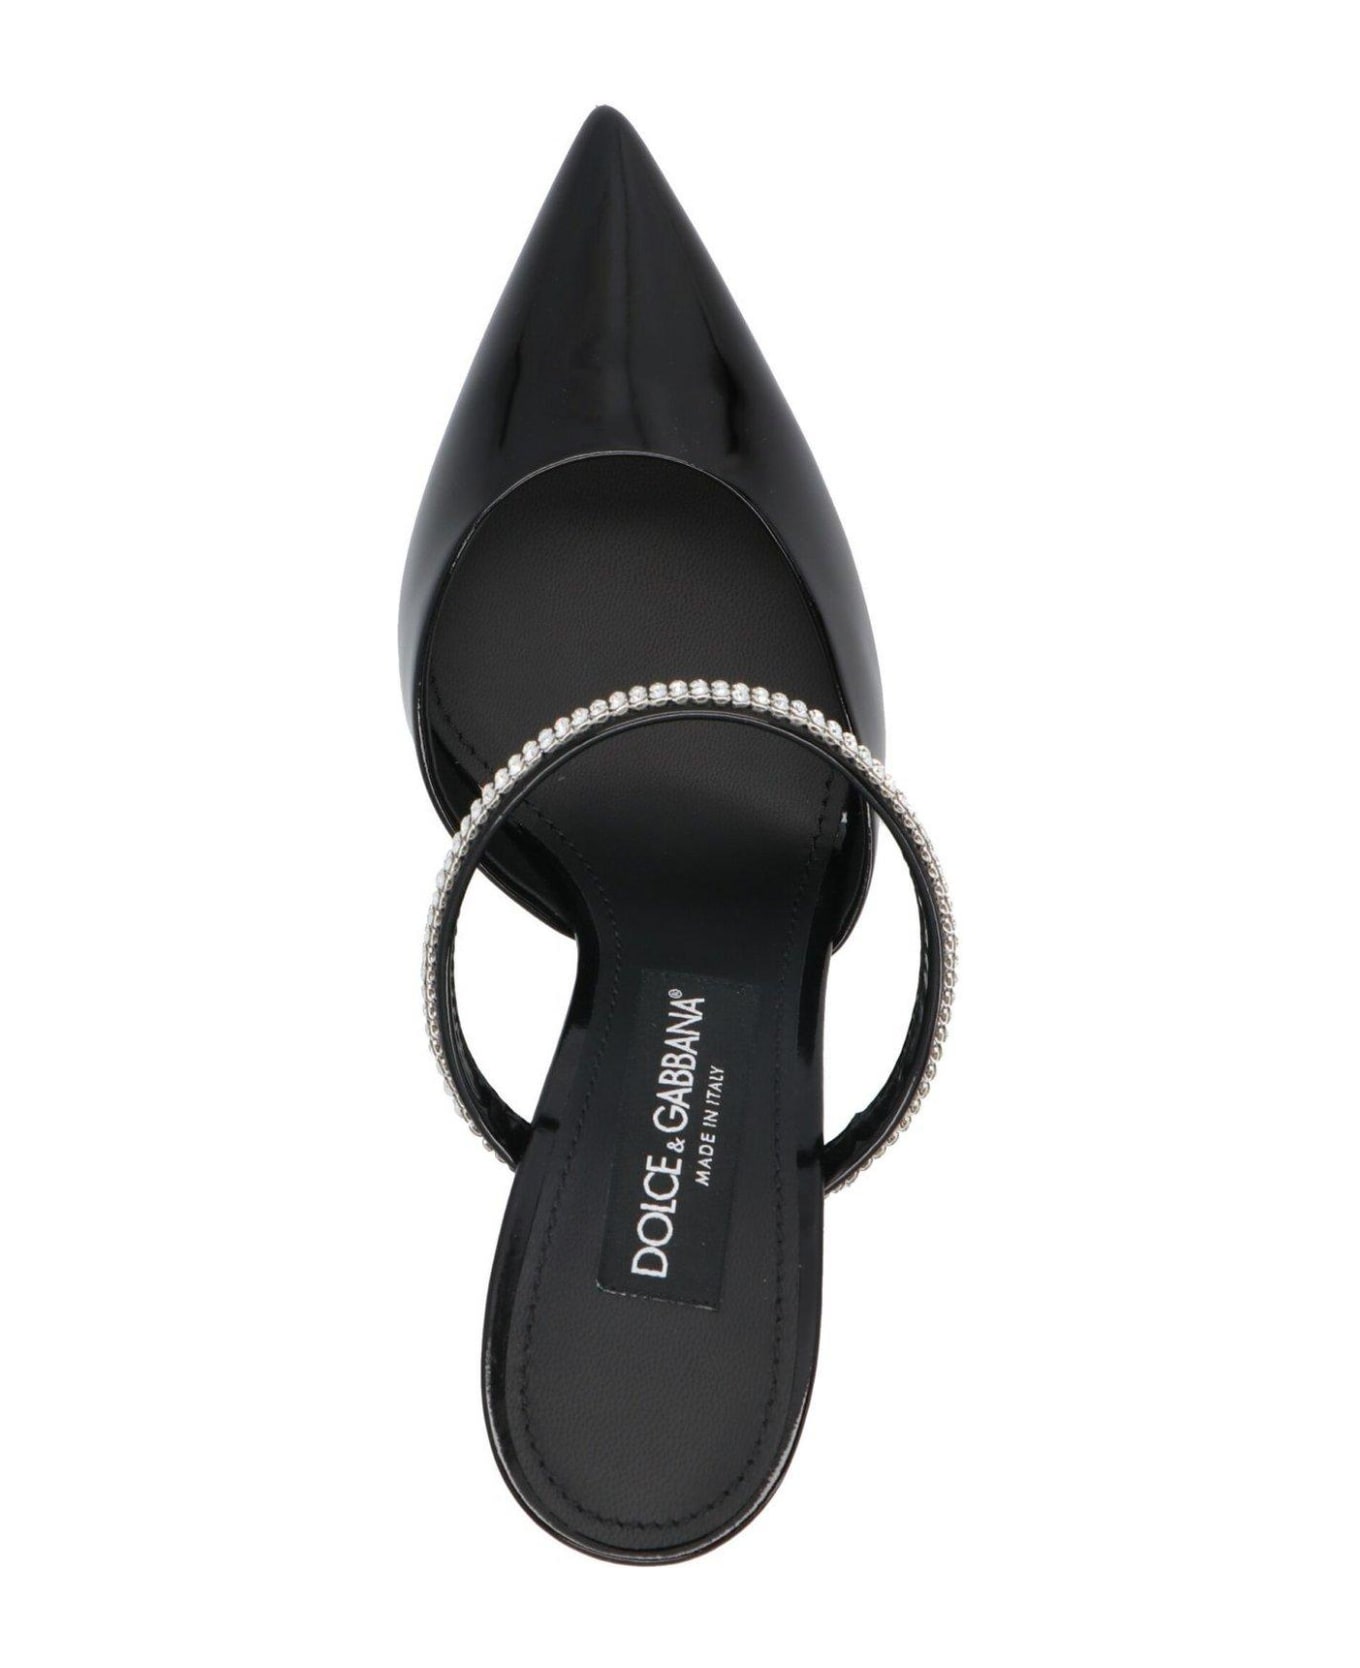 Dolce & Gabbana Embellished Pointed Toe Mules - Nero サンダル